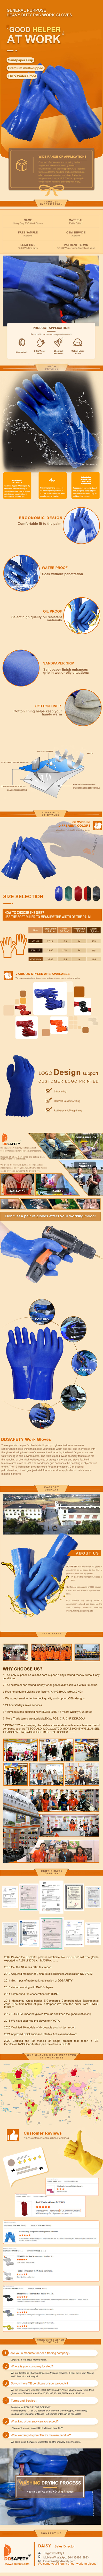 Waterproof Work Gloves - DPV116 Waterproof Work Gloves - DPV116 gloves,Waterproof Work Gloves,Work Gloves,Waterproof Gloves